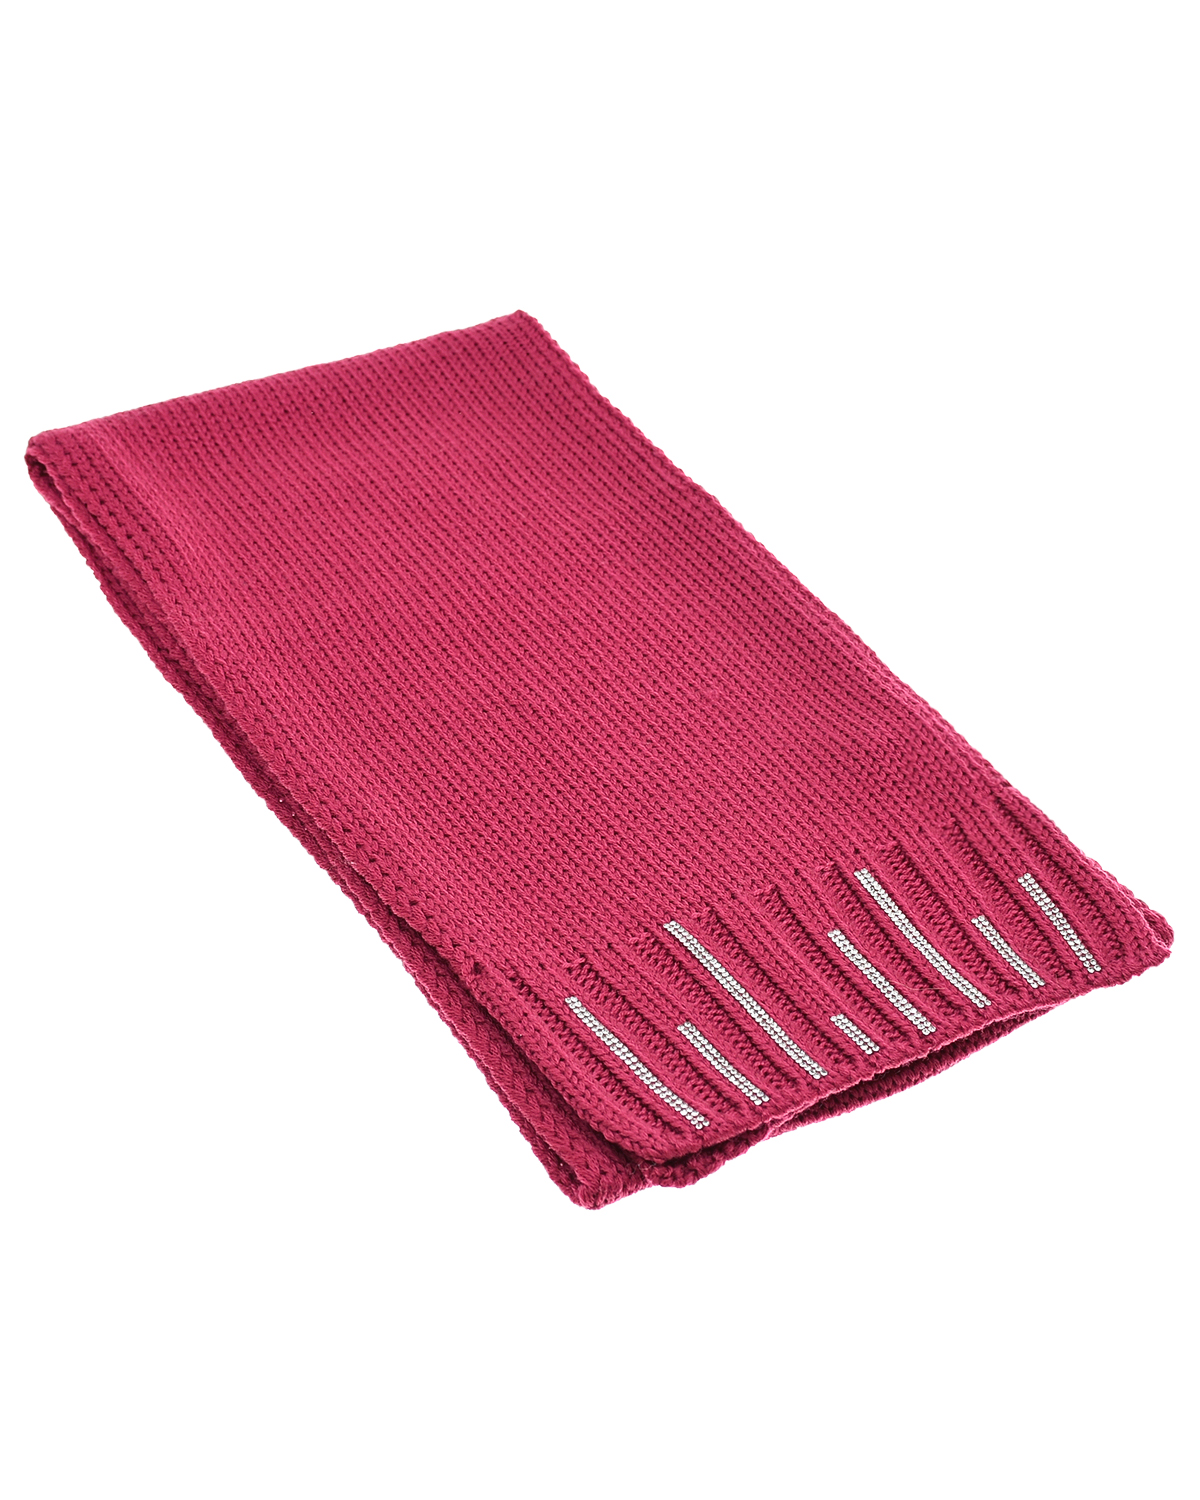 Шерстяной шарф со стразами Joli Bebe детский, размер unica, цвет розовый